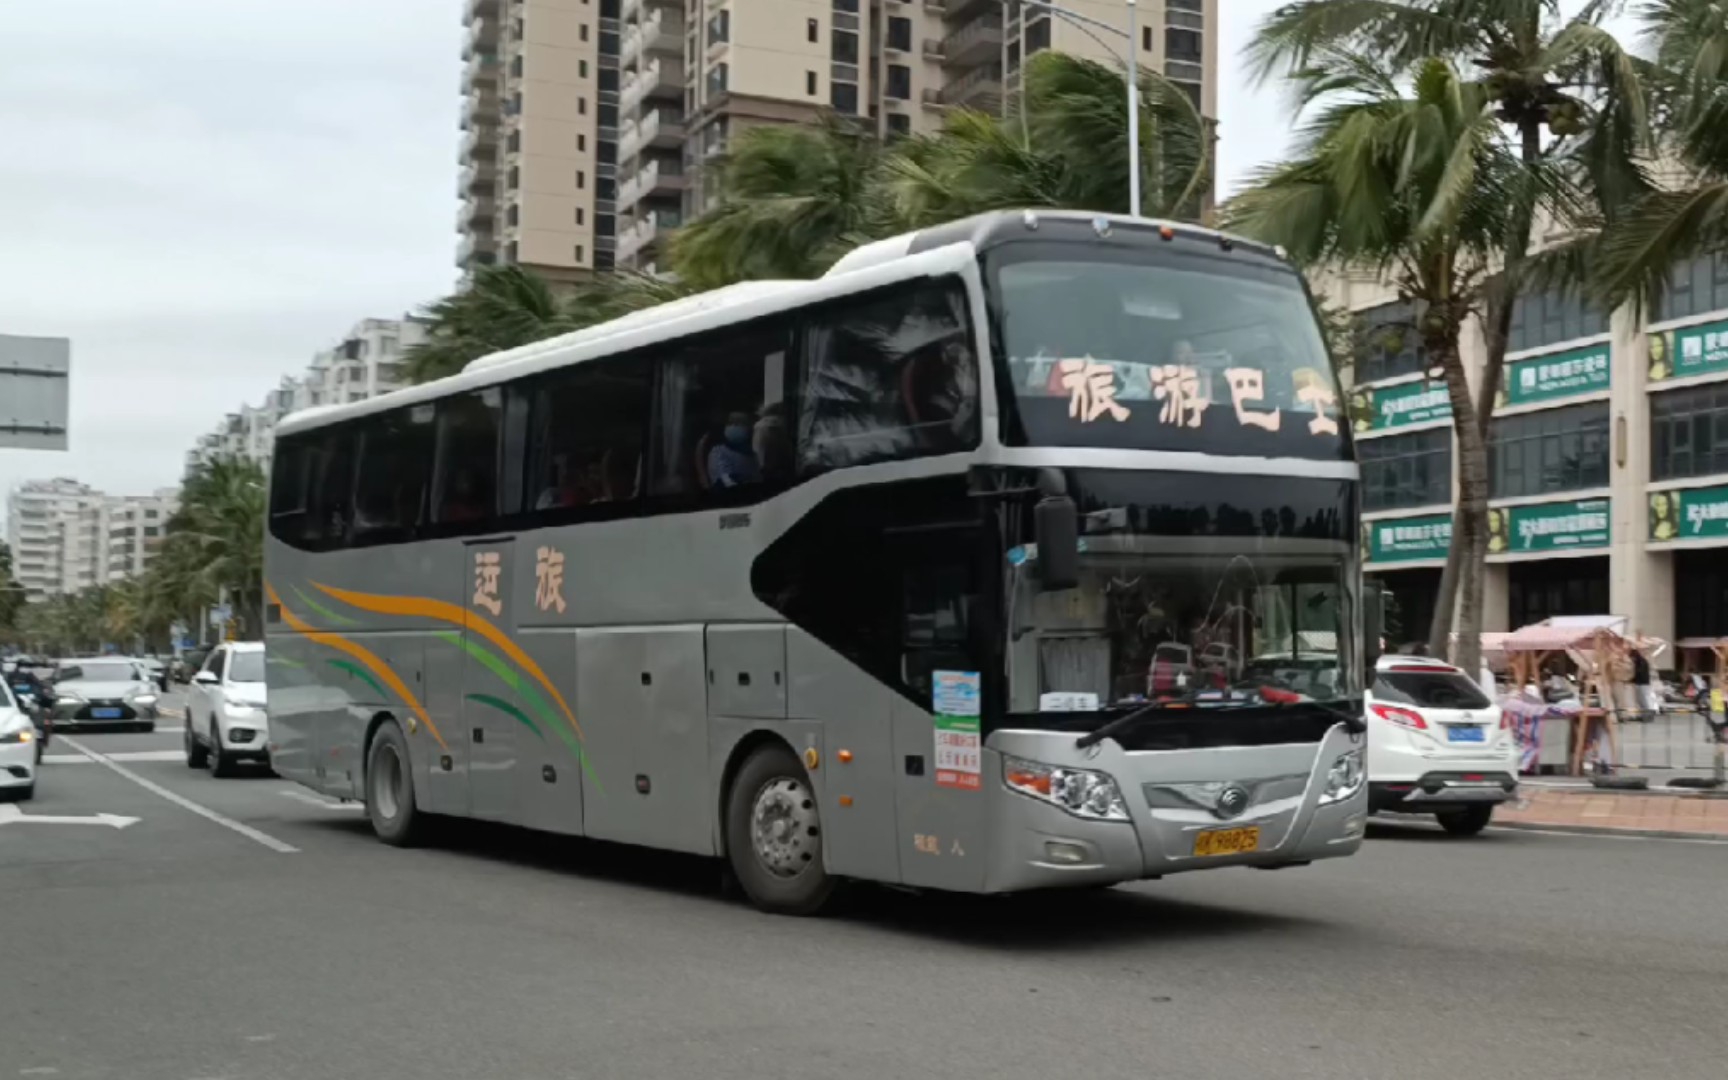 【车辆特写】玉林 旅游巴士 宇通zk6127hsc9 桂k98825